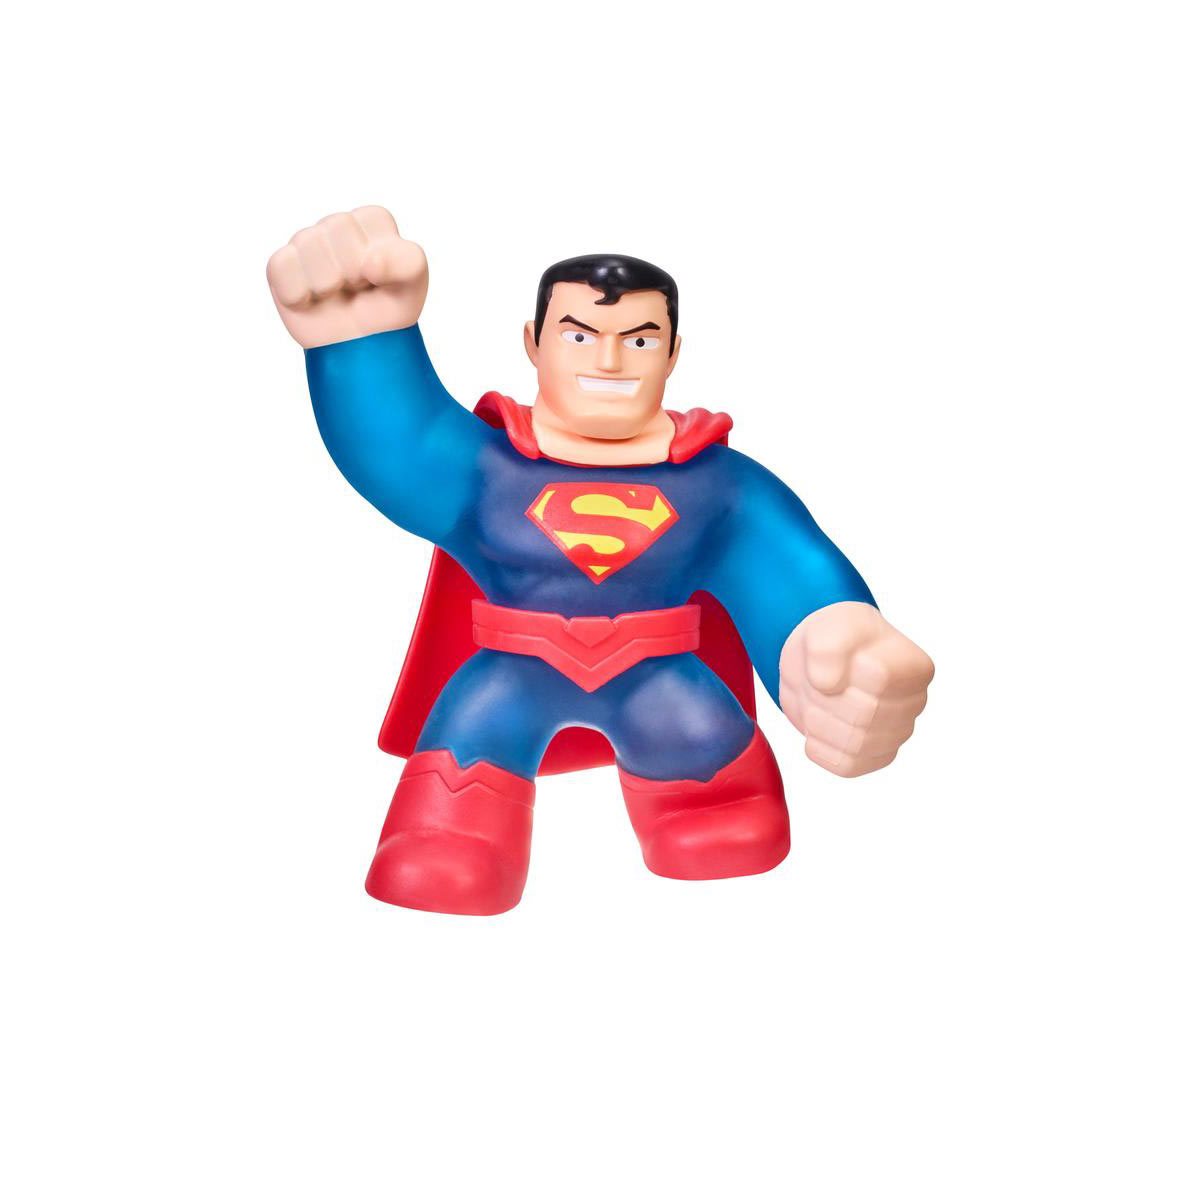 LEGO SUPERHERO MINIFIGURES RANDOMLY SELECTED HERO FIGS DC MARVEL COMICS $4 EACH! 